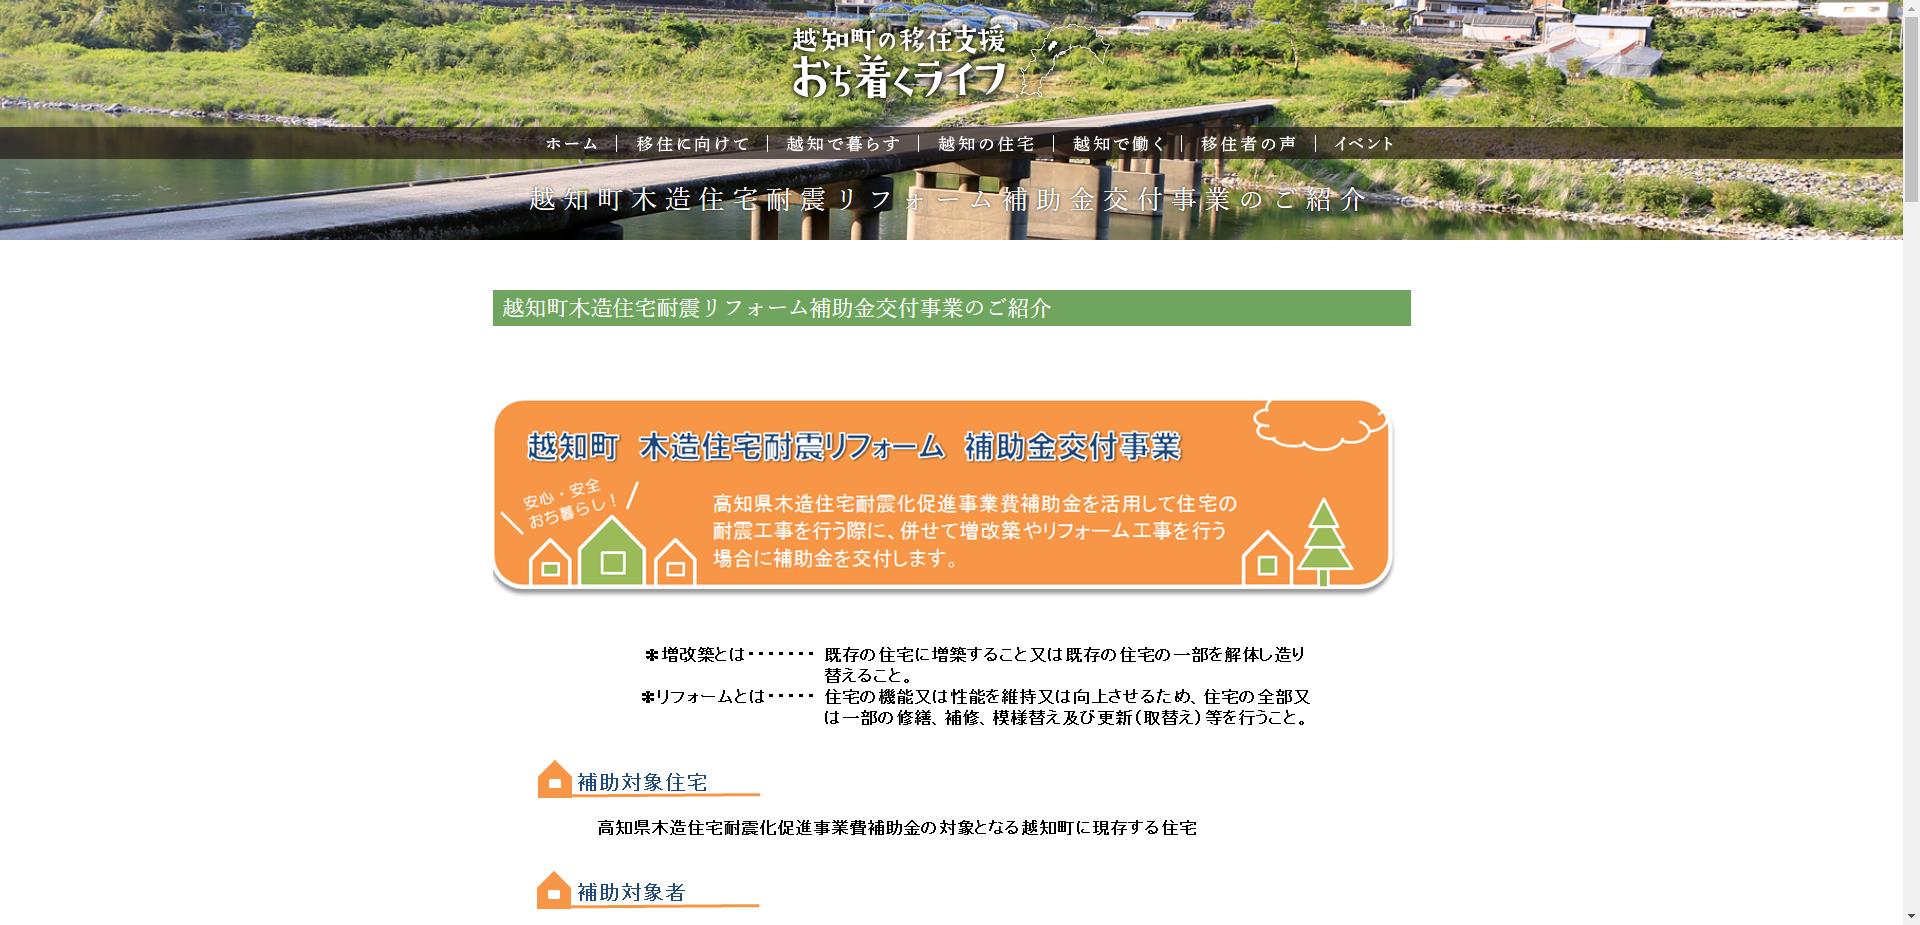 高知県住宅耐震化促進事業